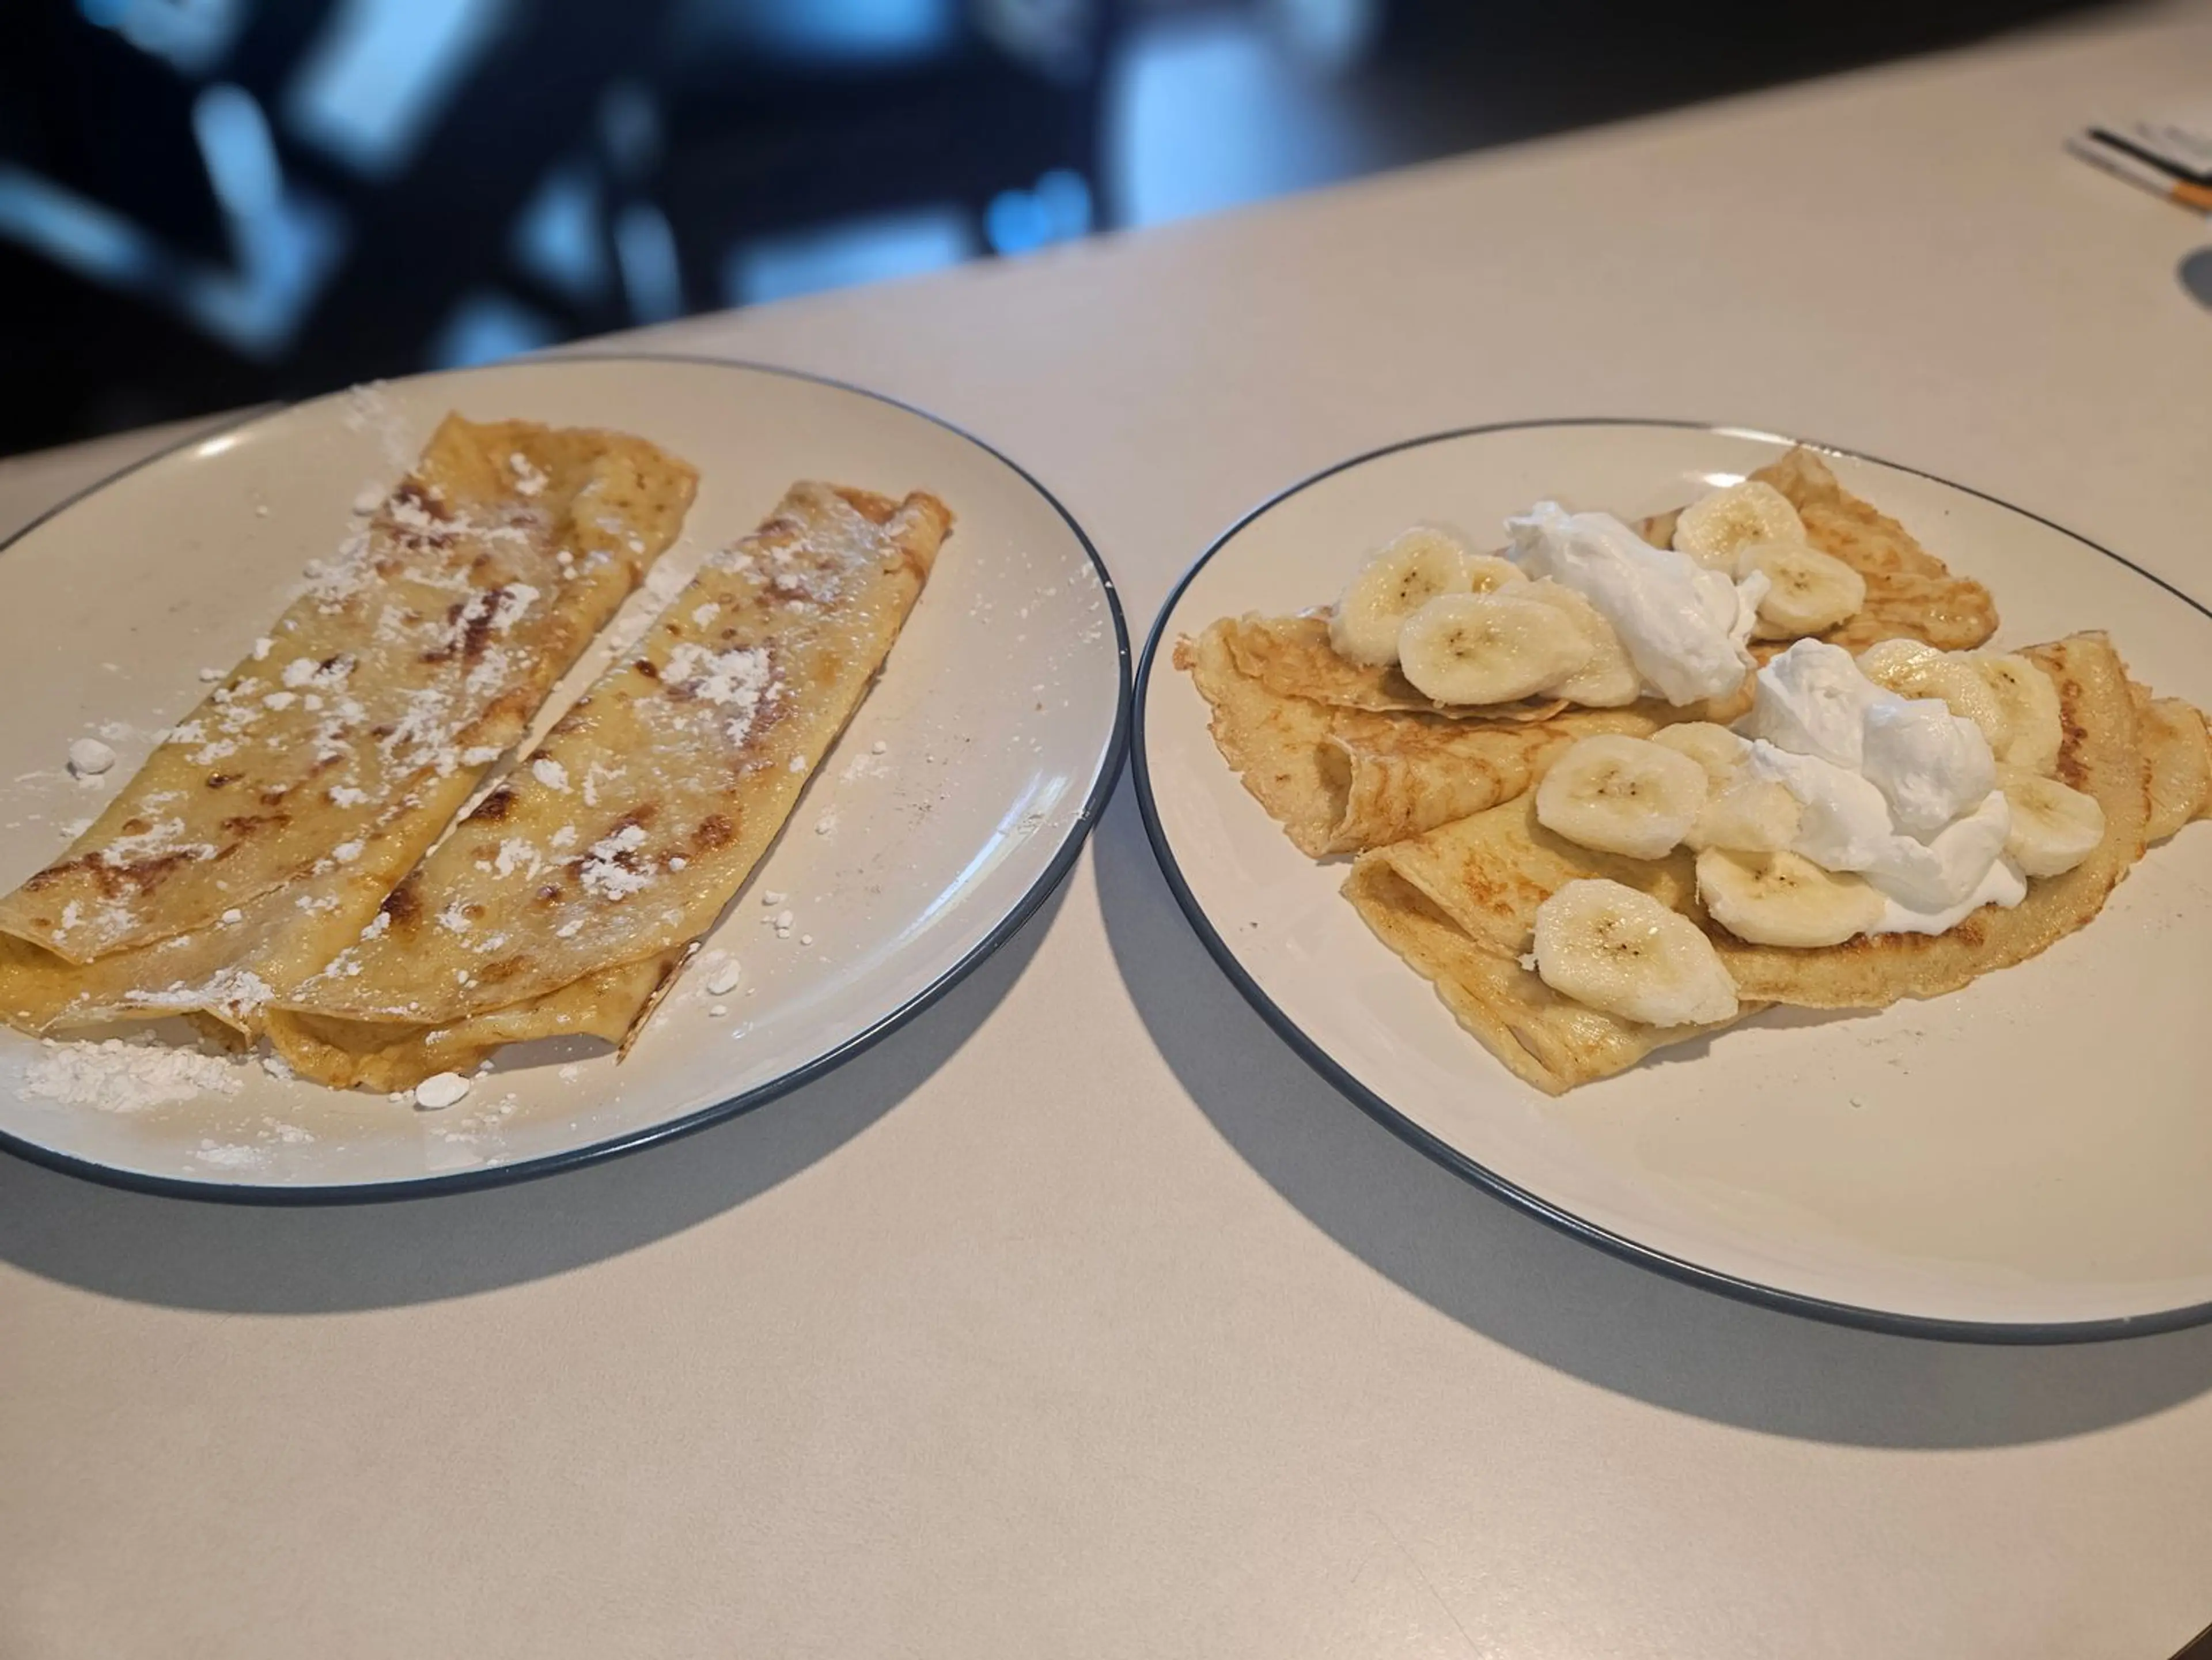 Pankkakor (Swedish Pancakes)